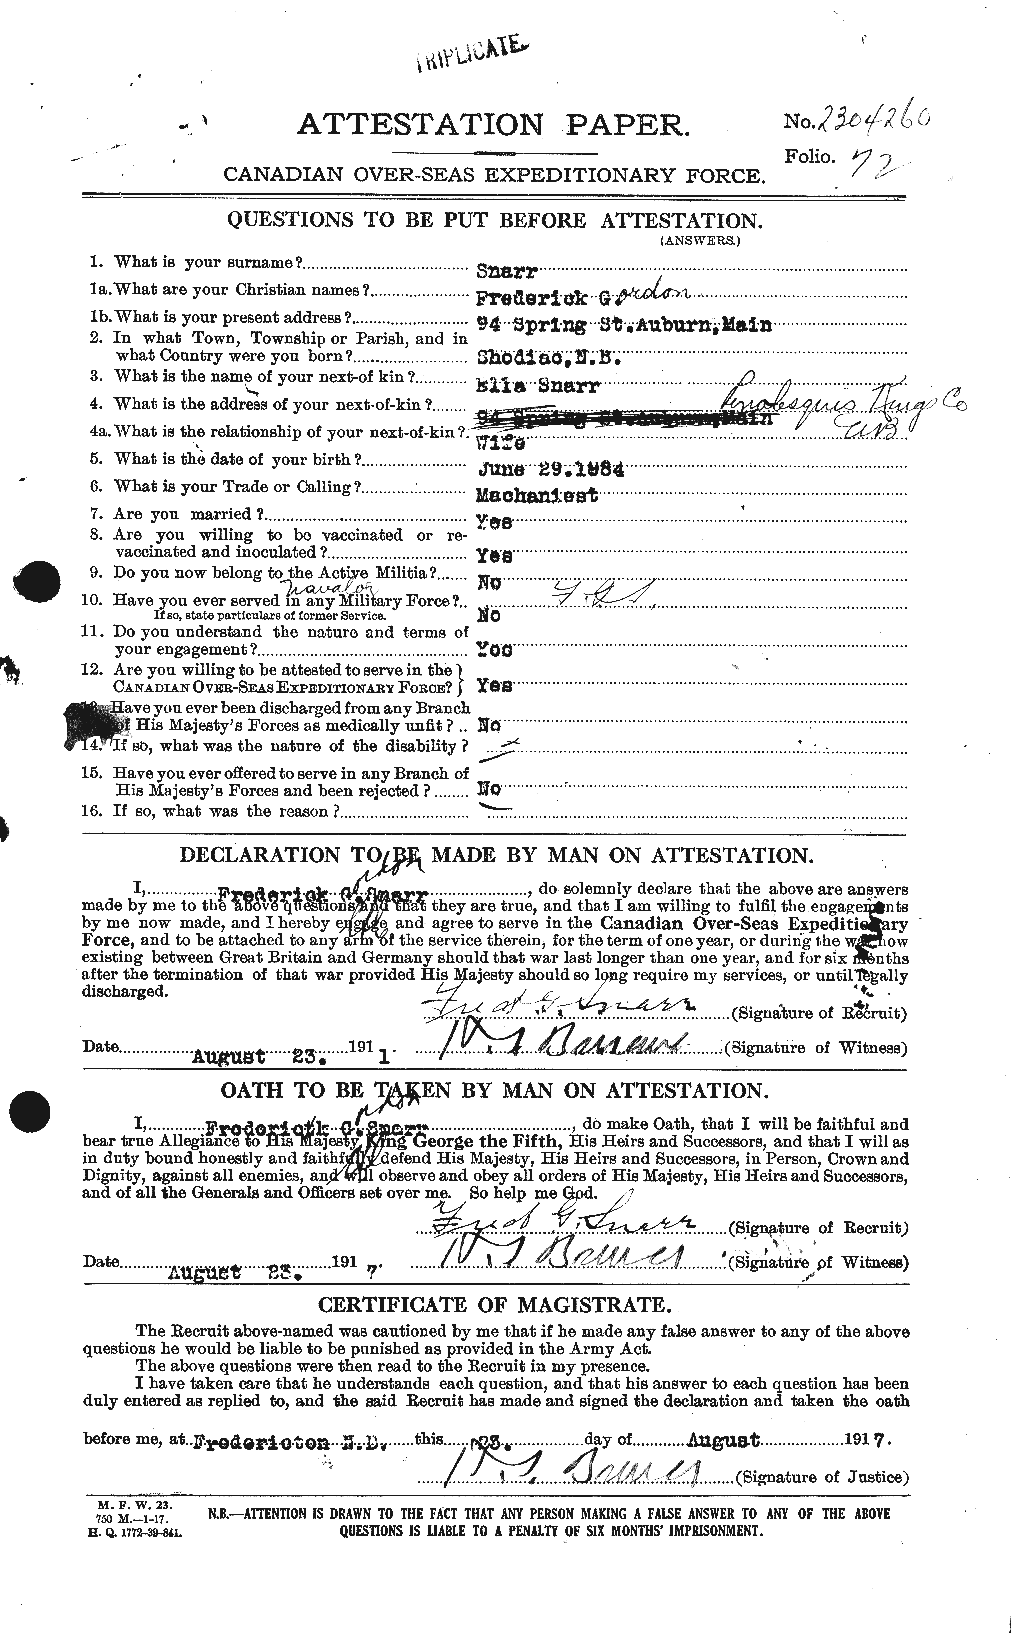 Dossiers du Personnel de la Première Guerre mondiale - CEC 111300a